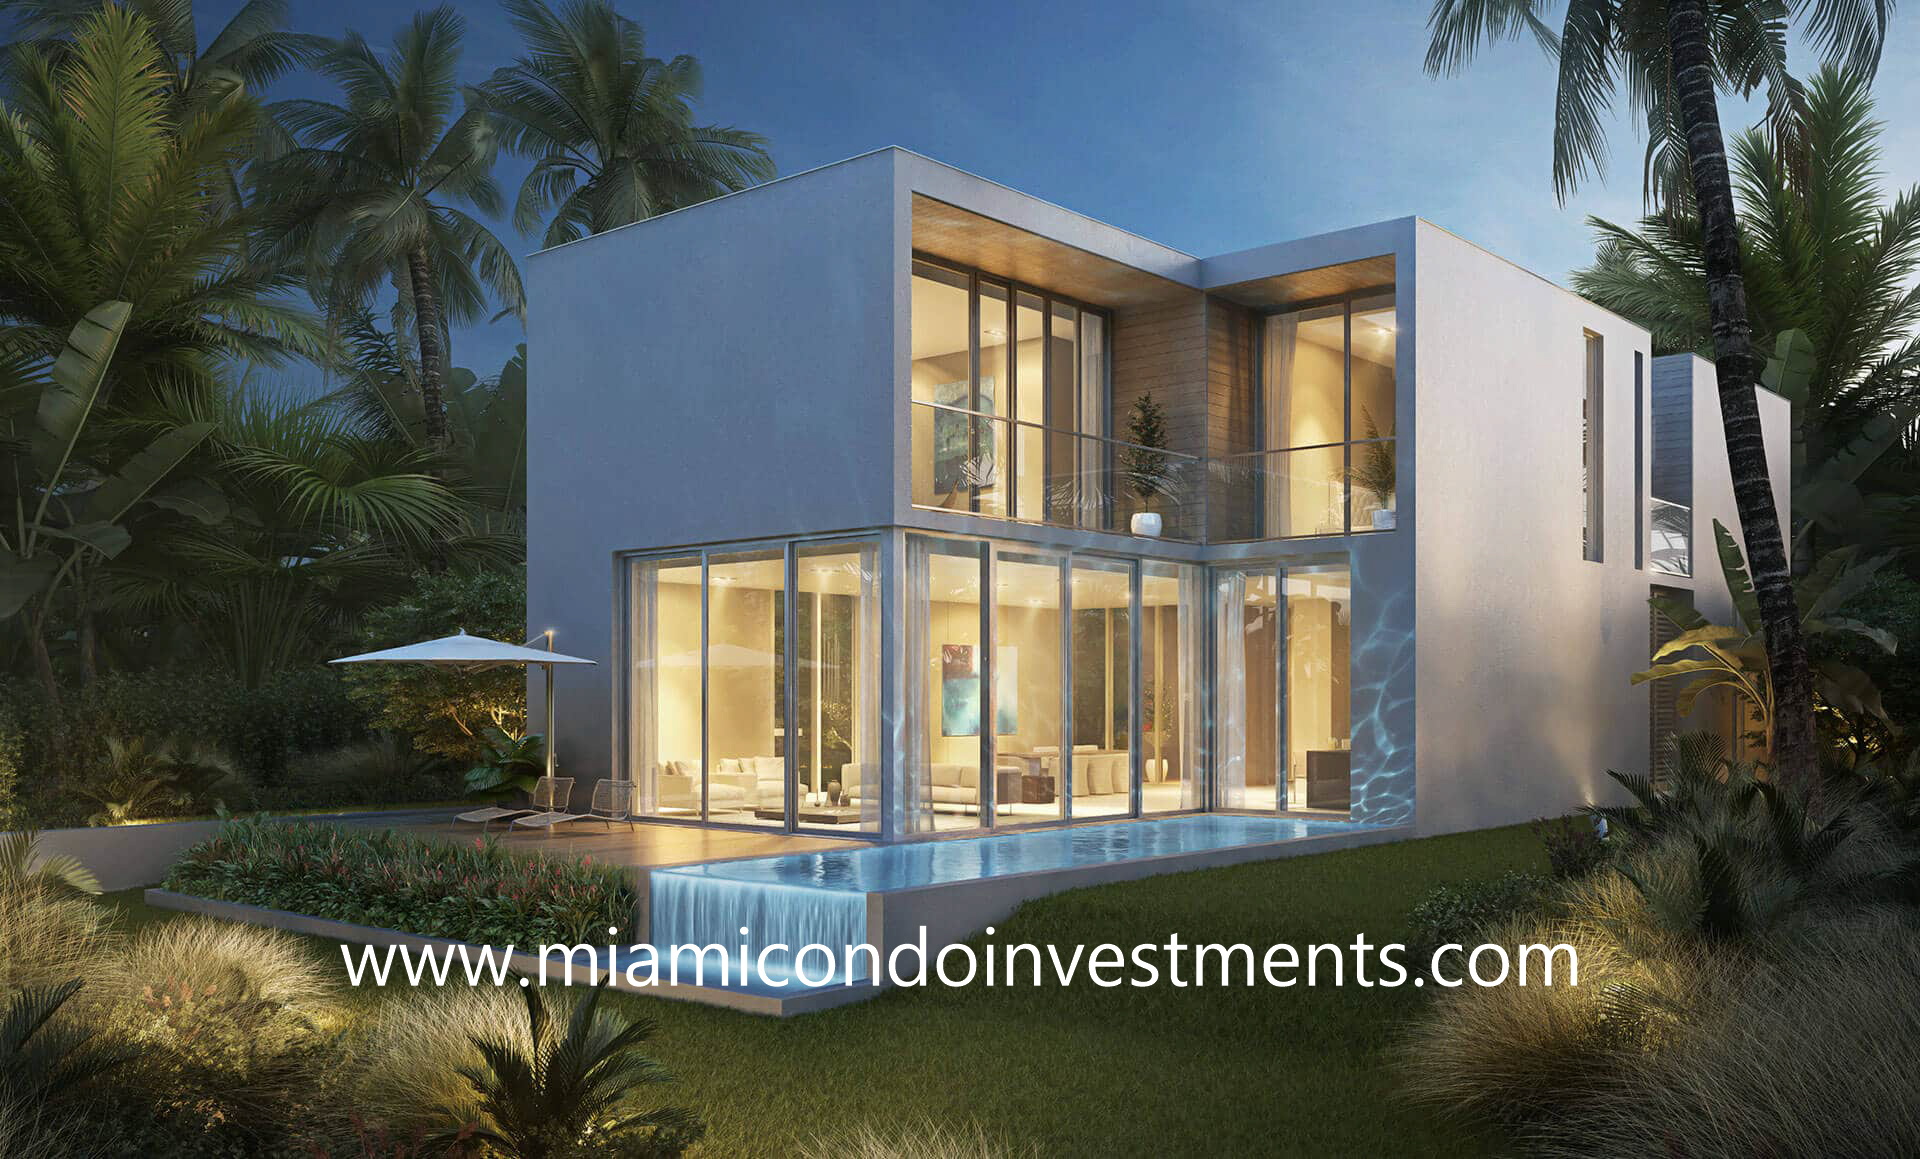 Villa D at The Ritz-Carlton Residences Miami Beach